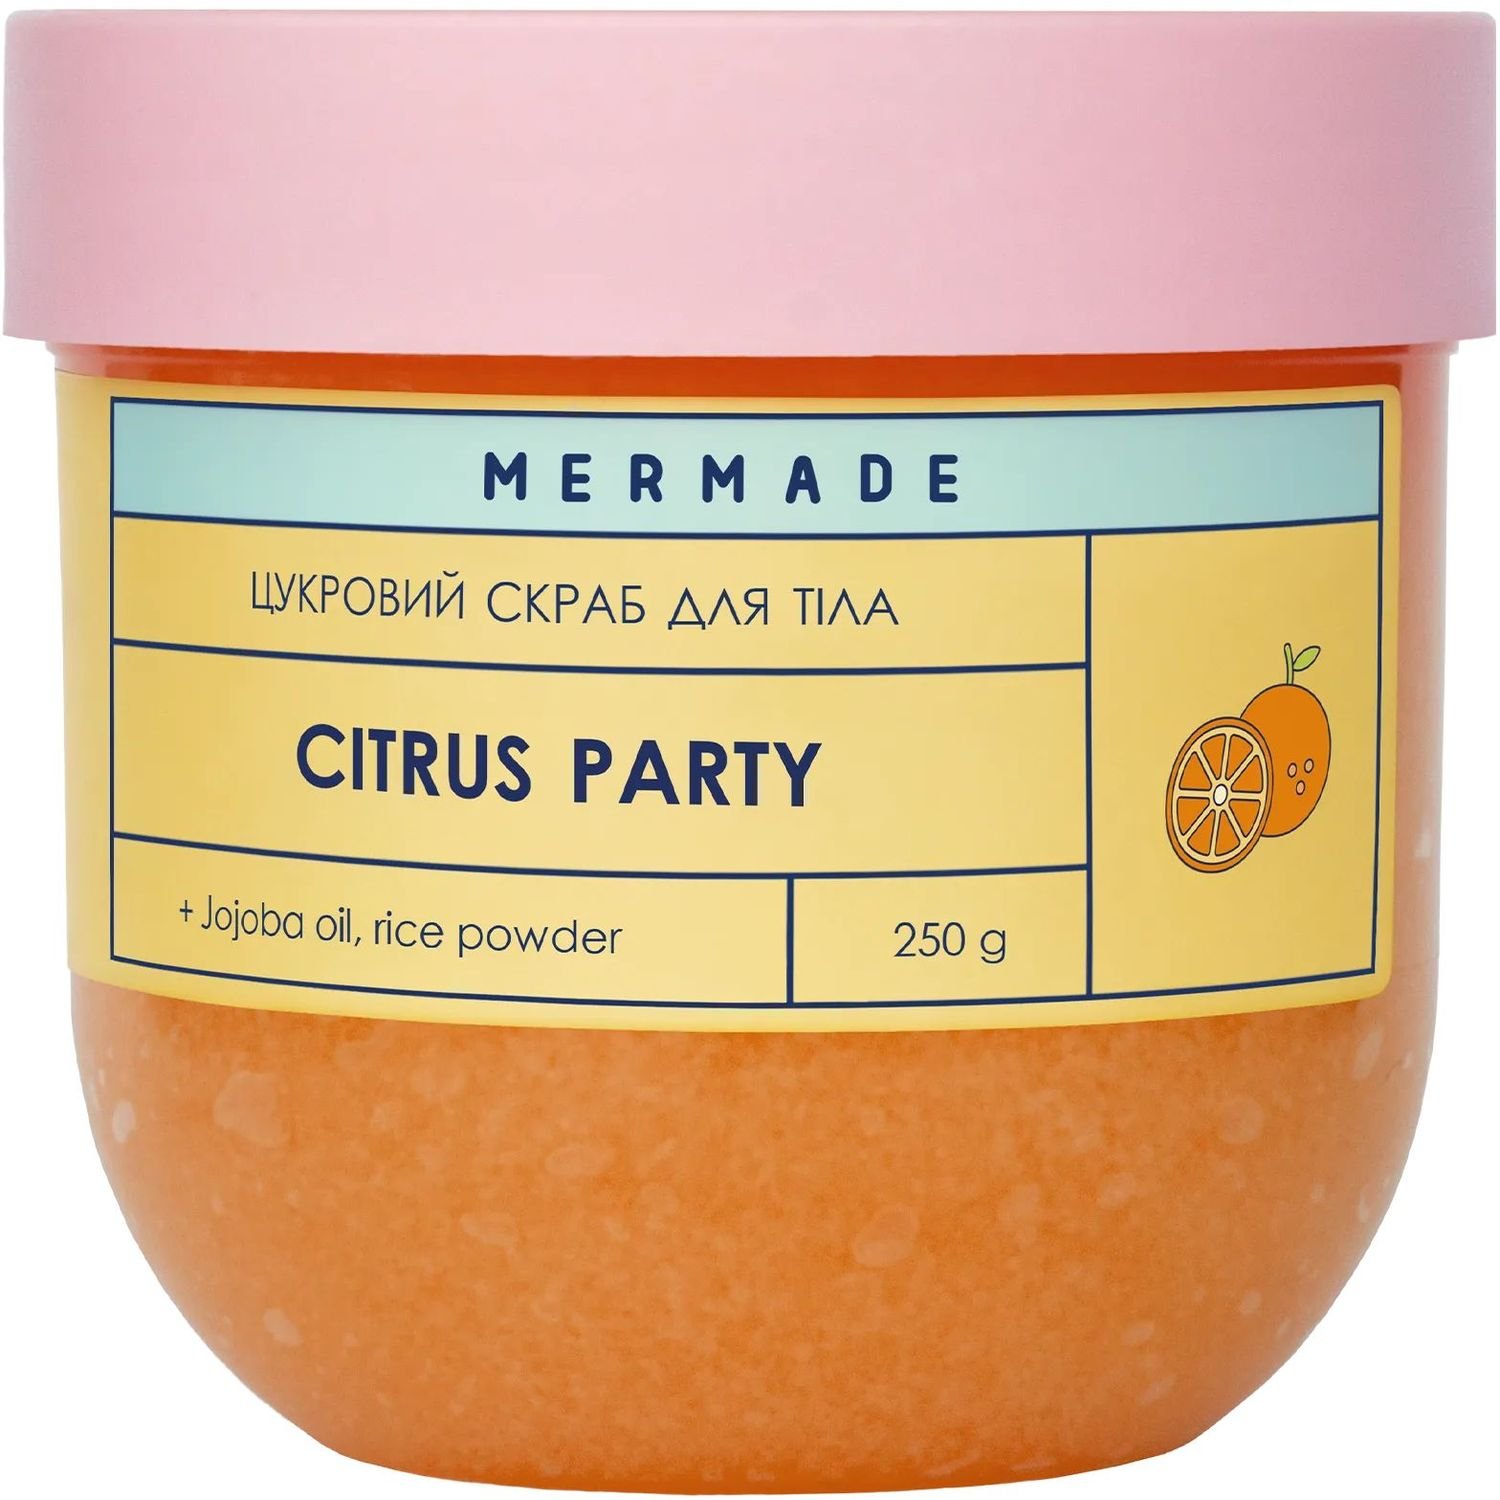 Цукровий скраб для тіла Mermade Citrus Party 250 г - фото 1